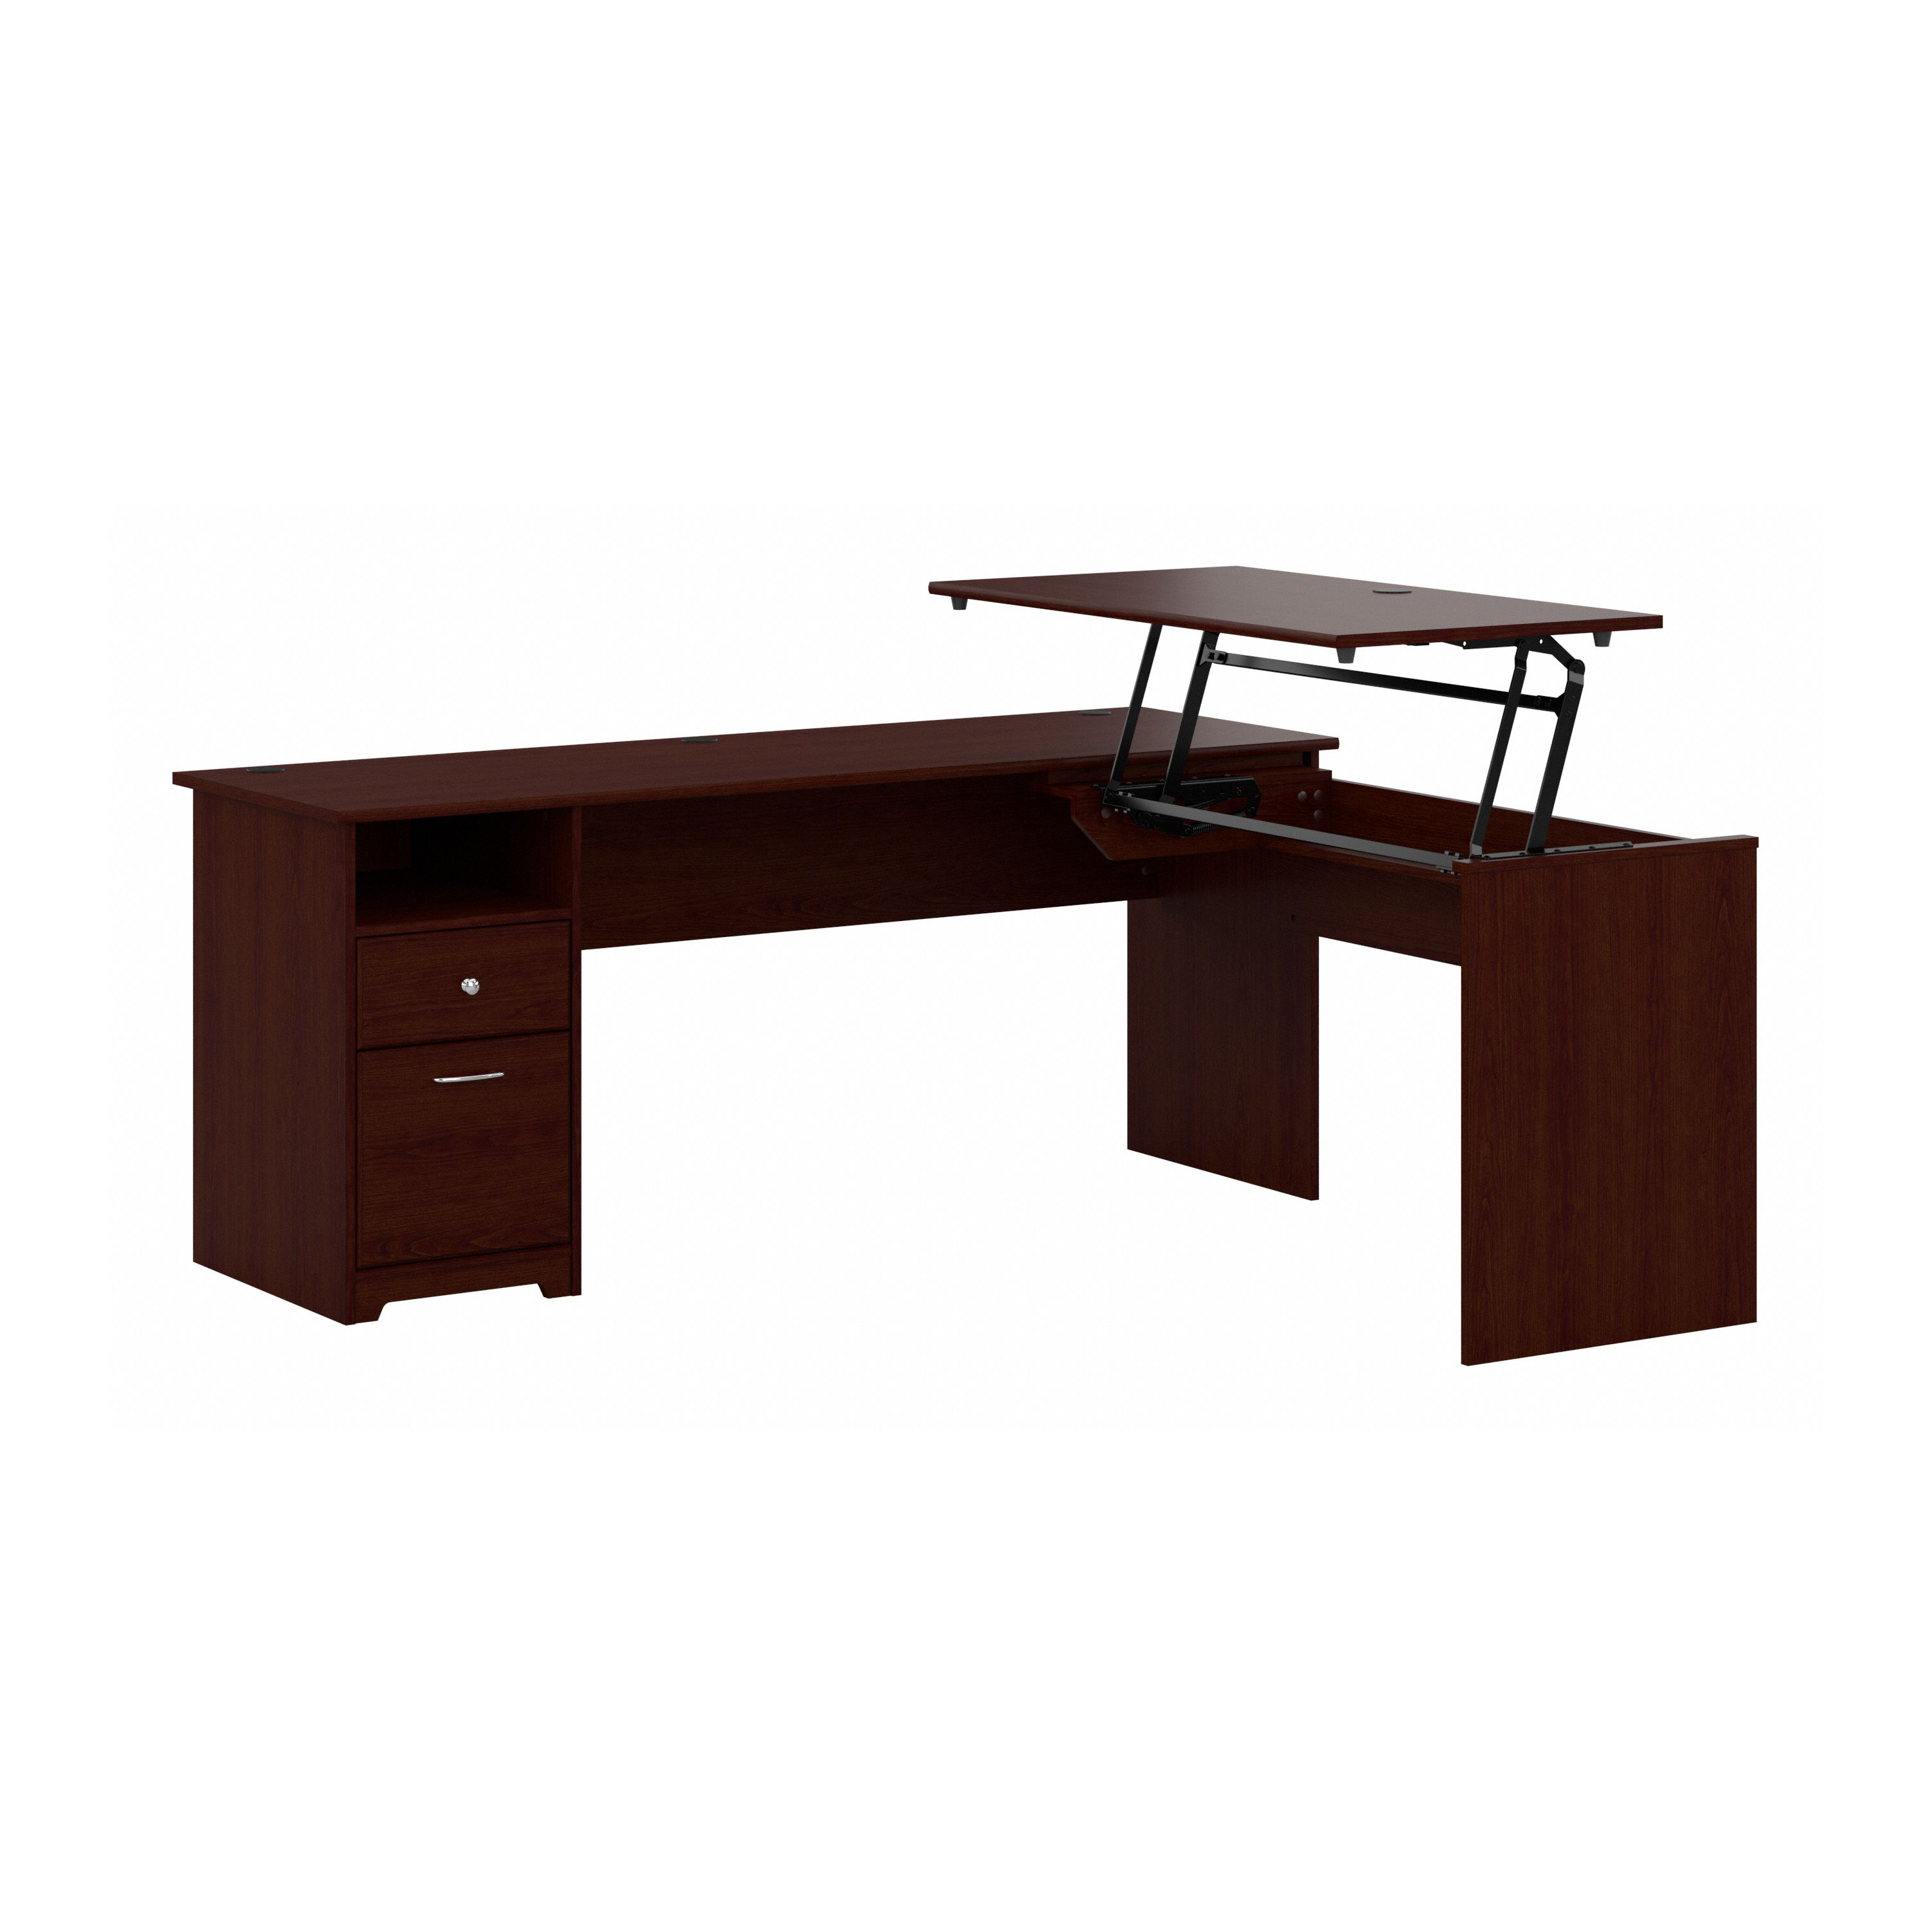 Shop Bush Furniture Cabot 72W 3 Position Sit to Stand L Shaped Desk 02 CAB050HVC #color_harvest cherry